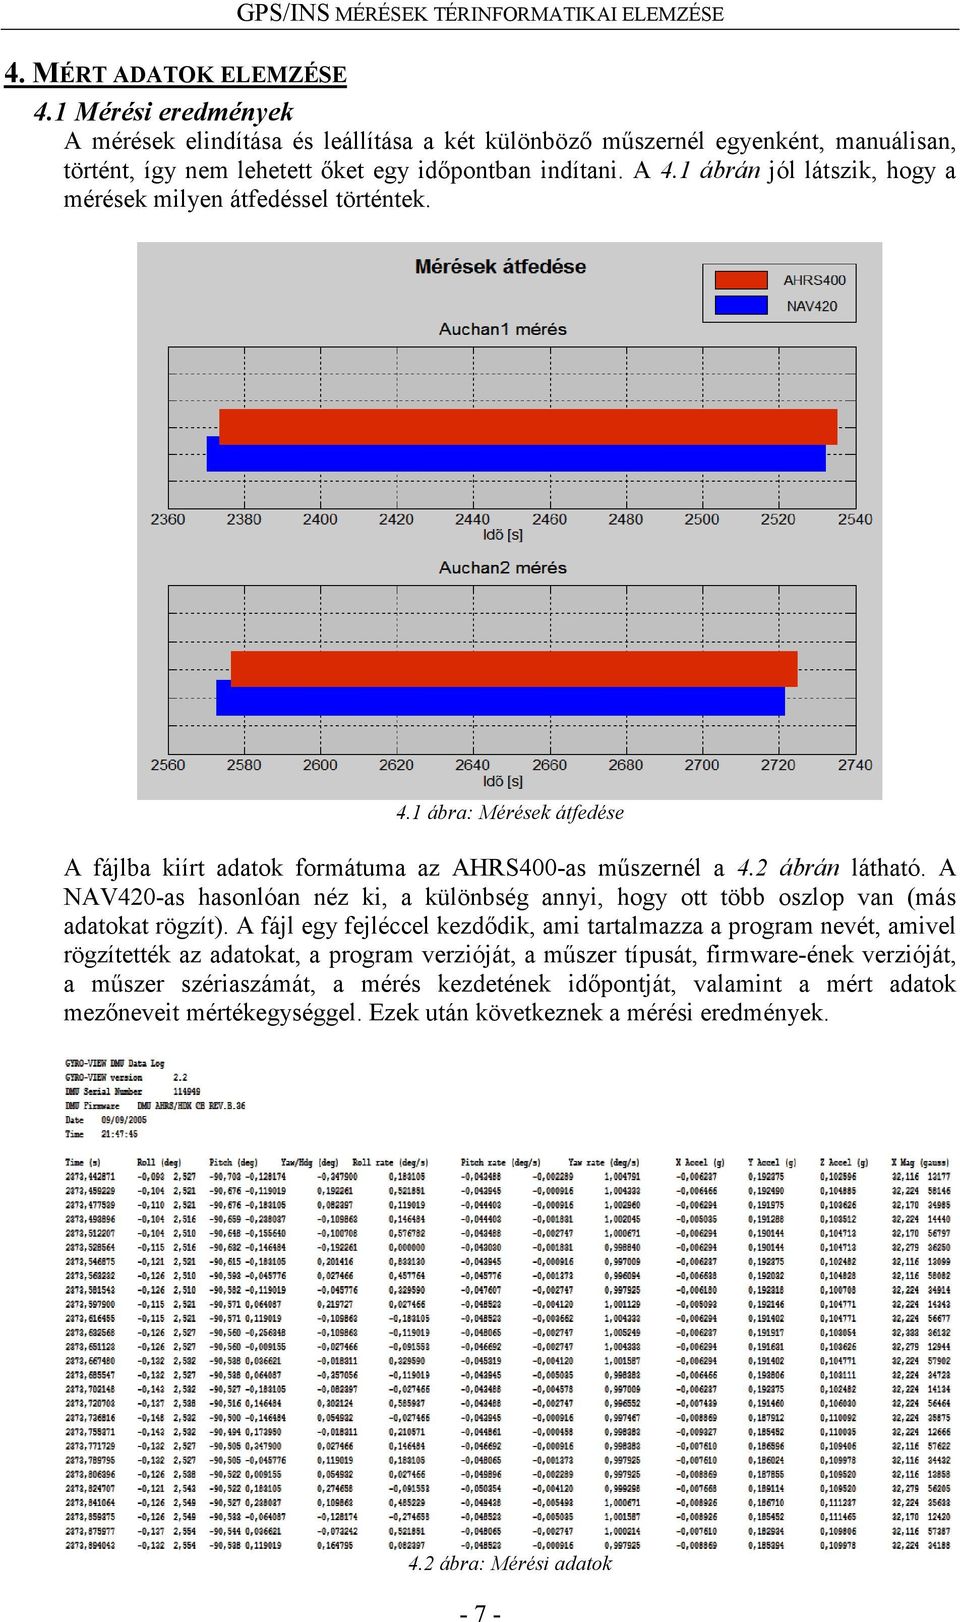 A NAV420-as hasonlóan néz ki, a különbség annyi, hogy ott több oszlop van (más adatokat rögzít).